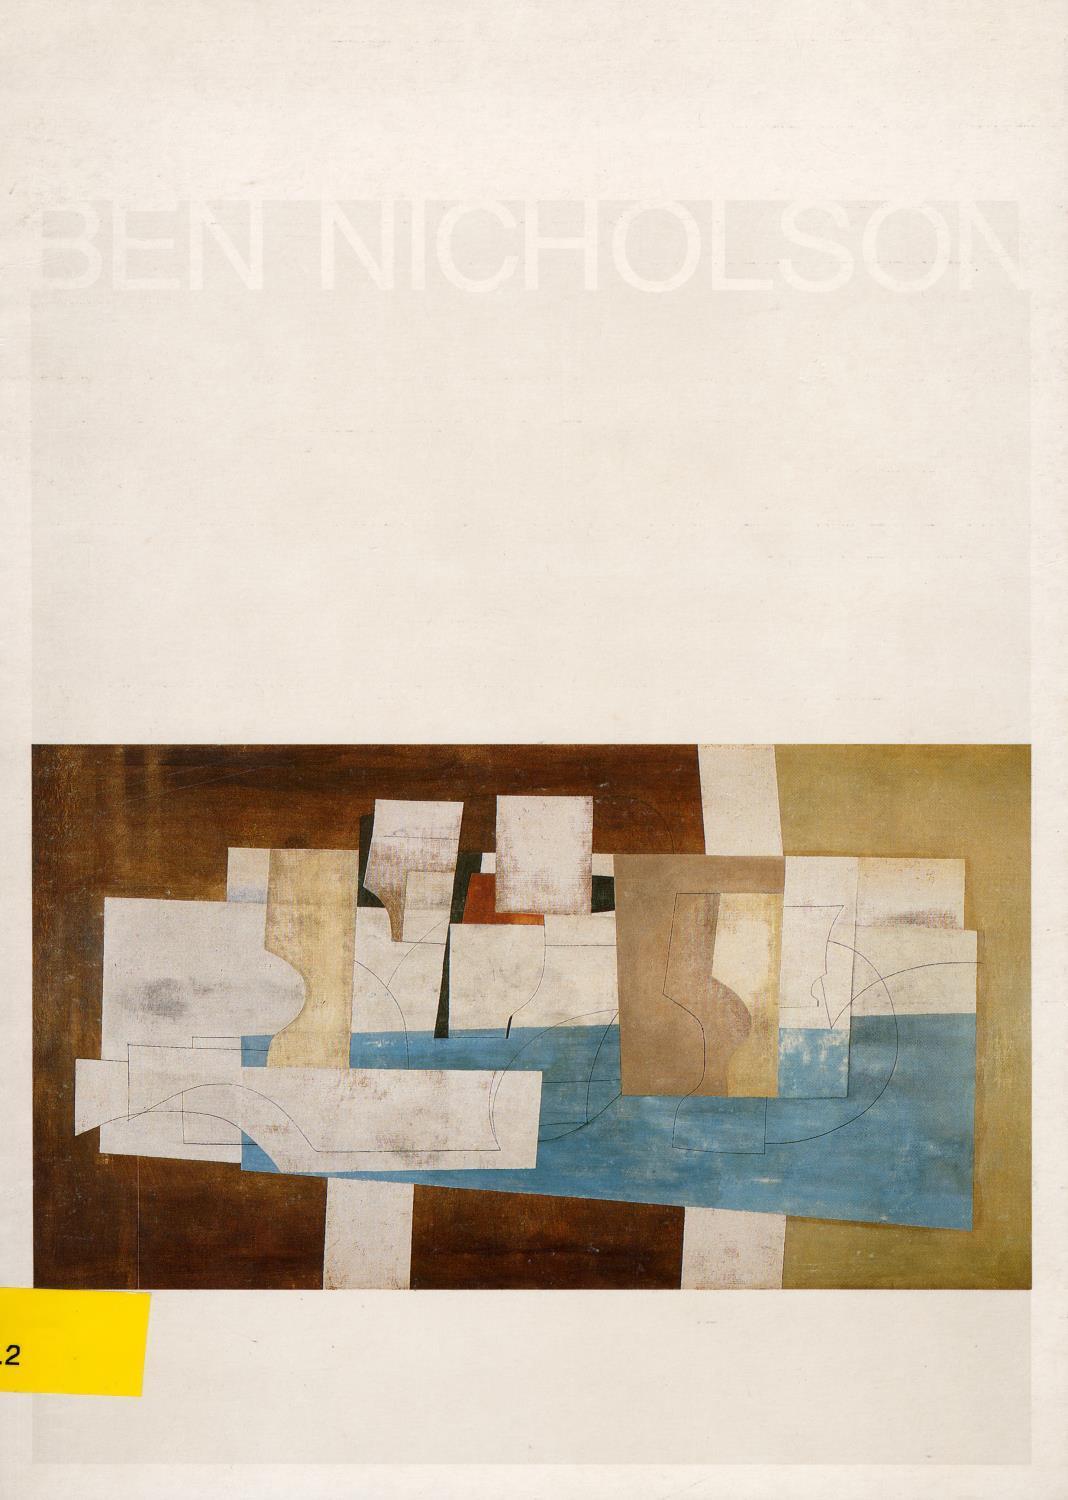 Ben Nicholson